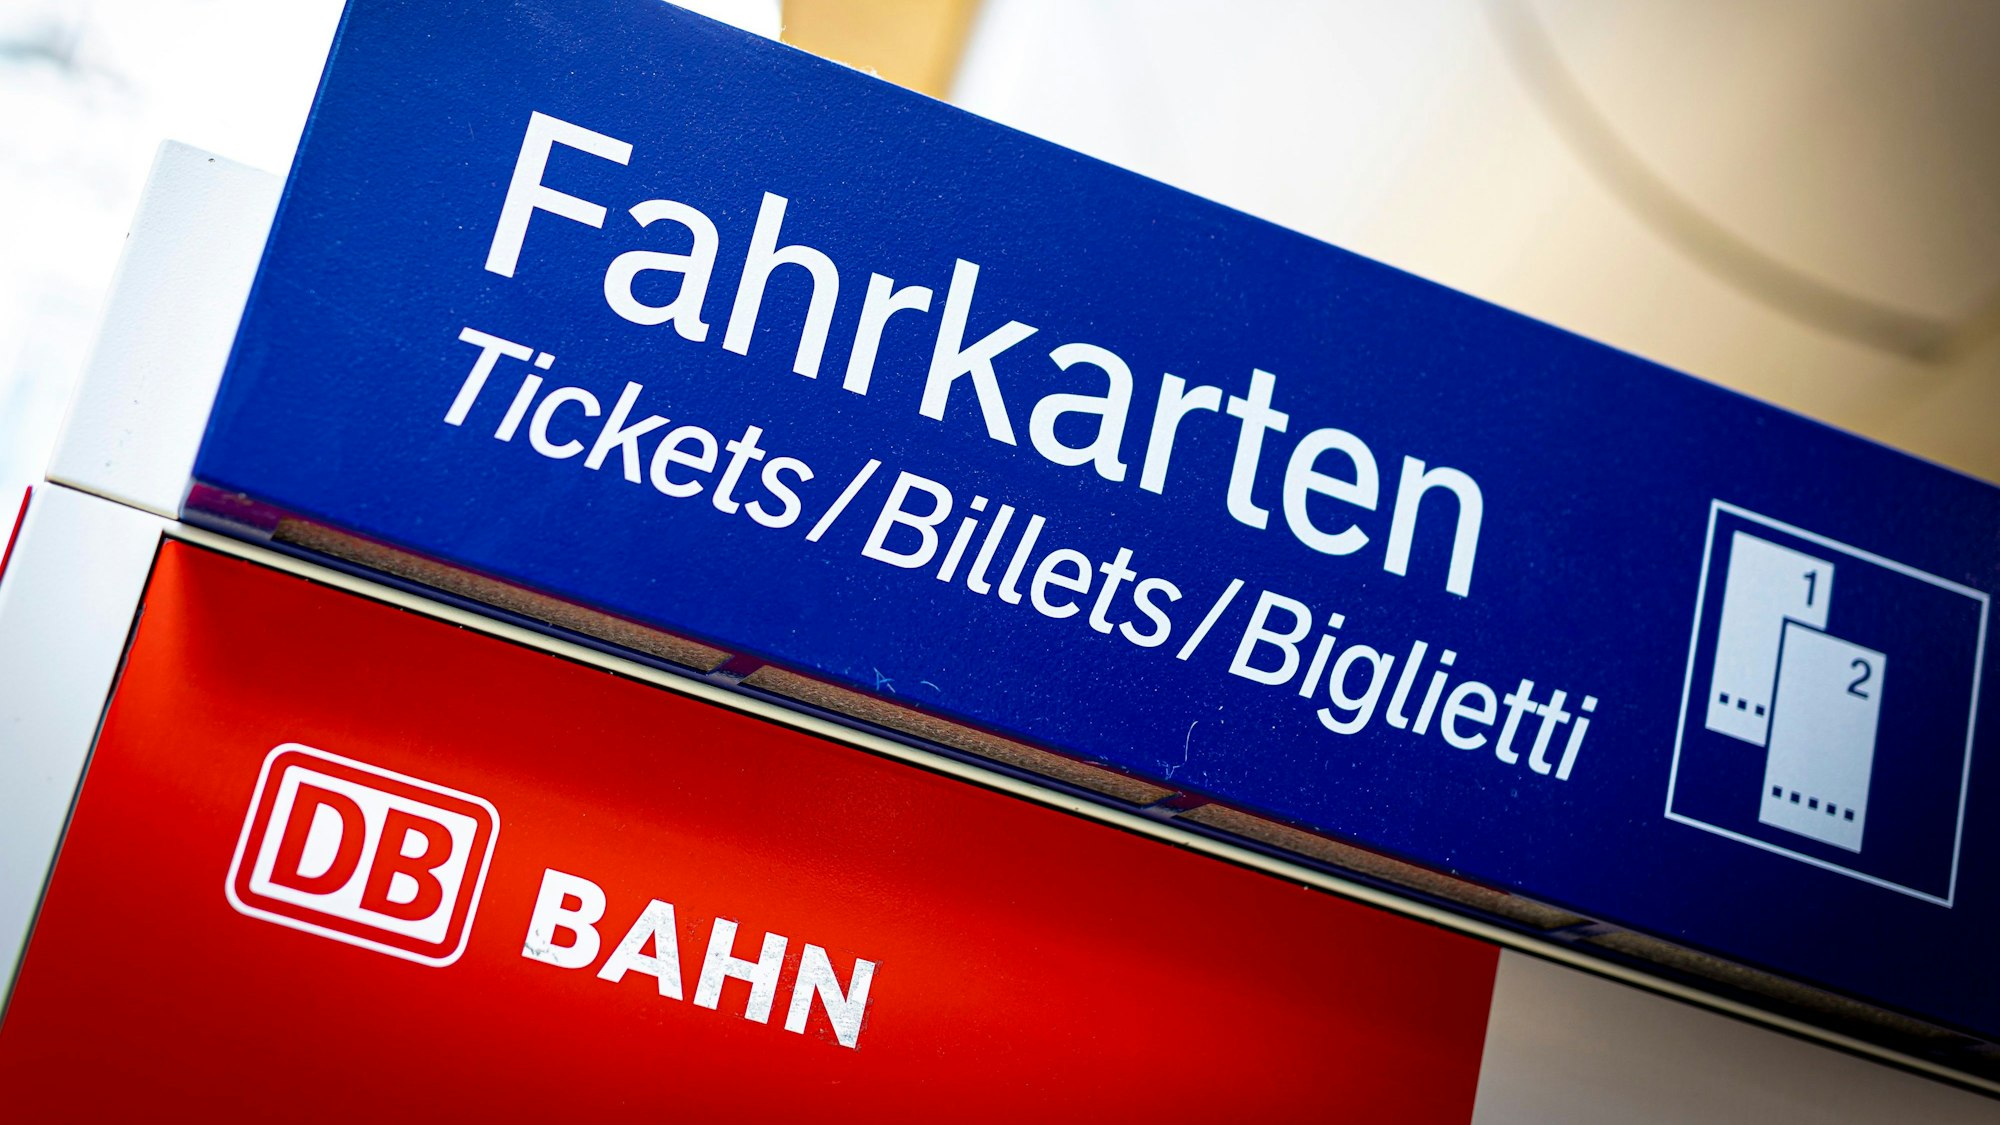 Ein Fahrkartenautomat der Deutschen Bahn.